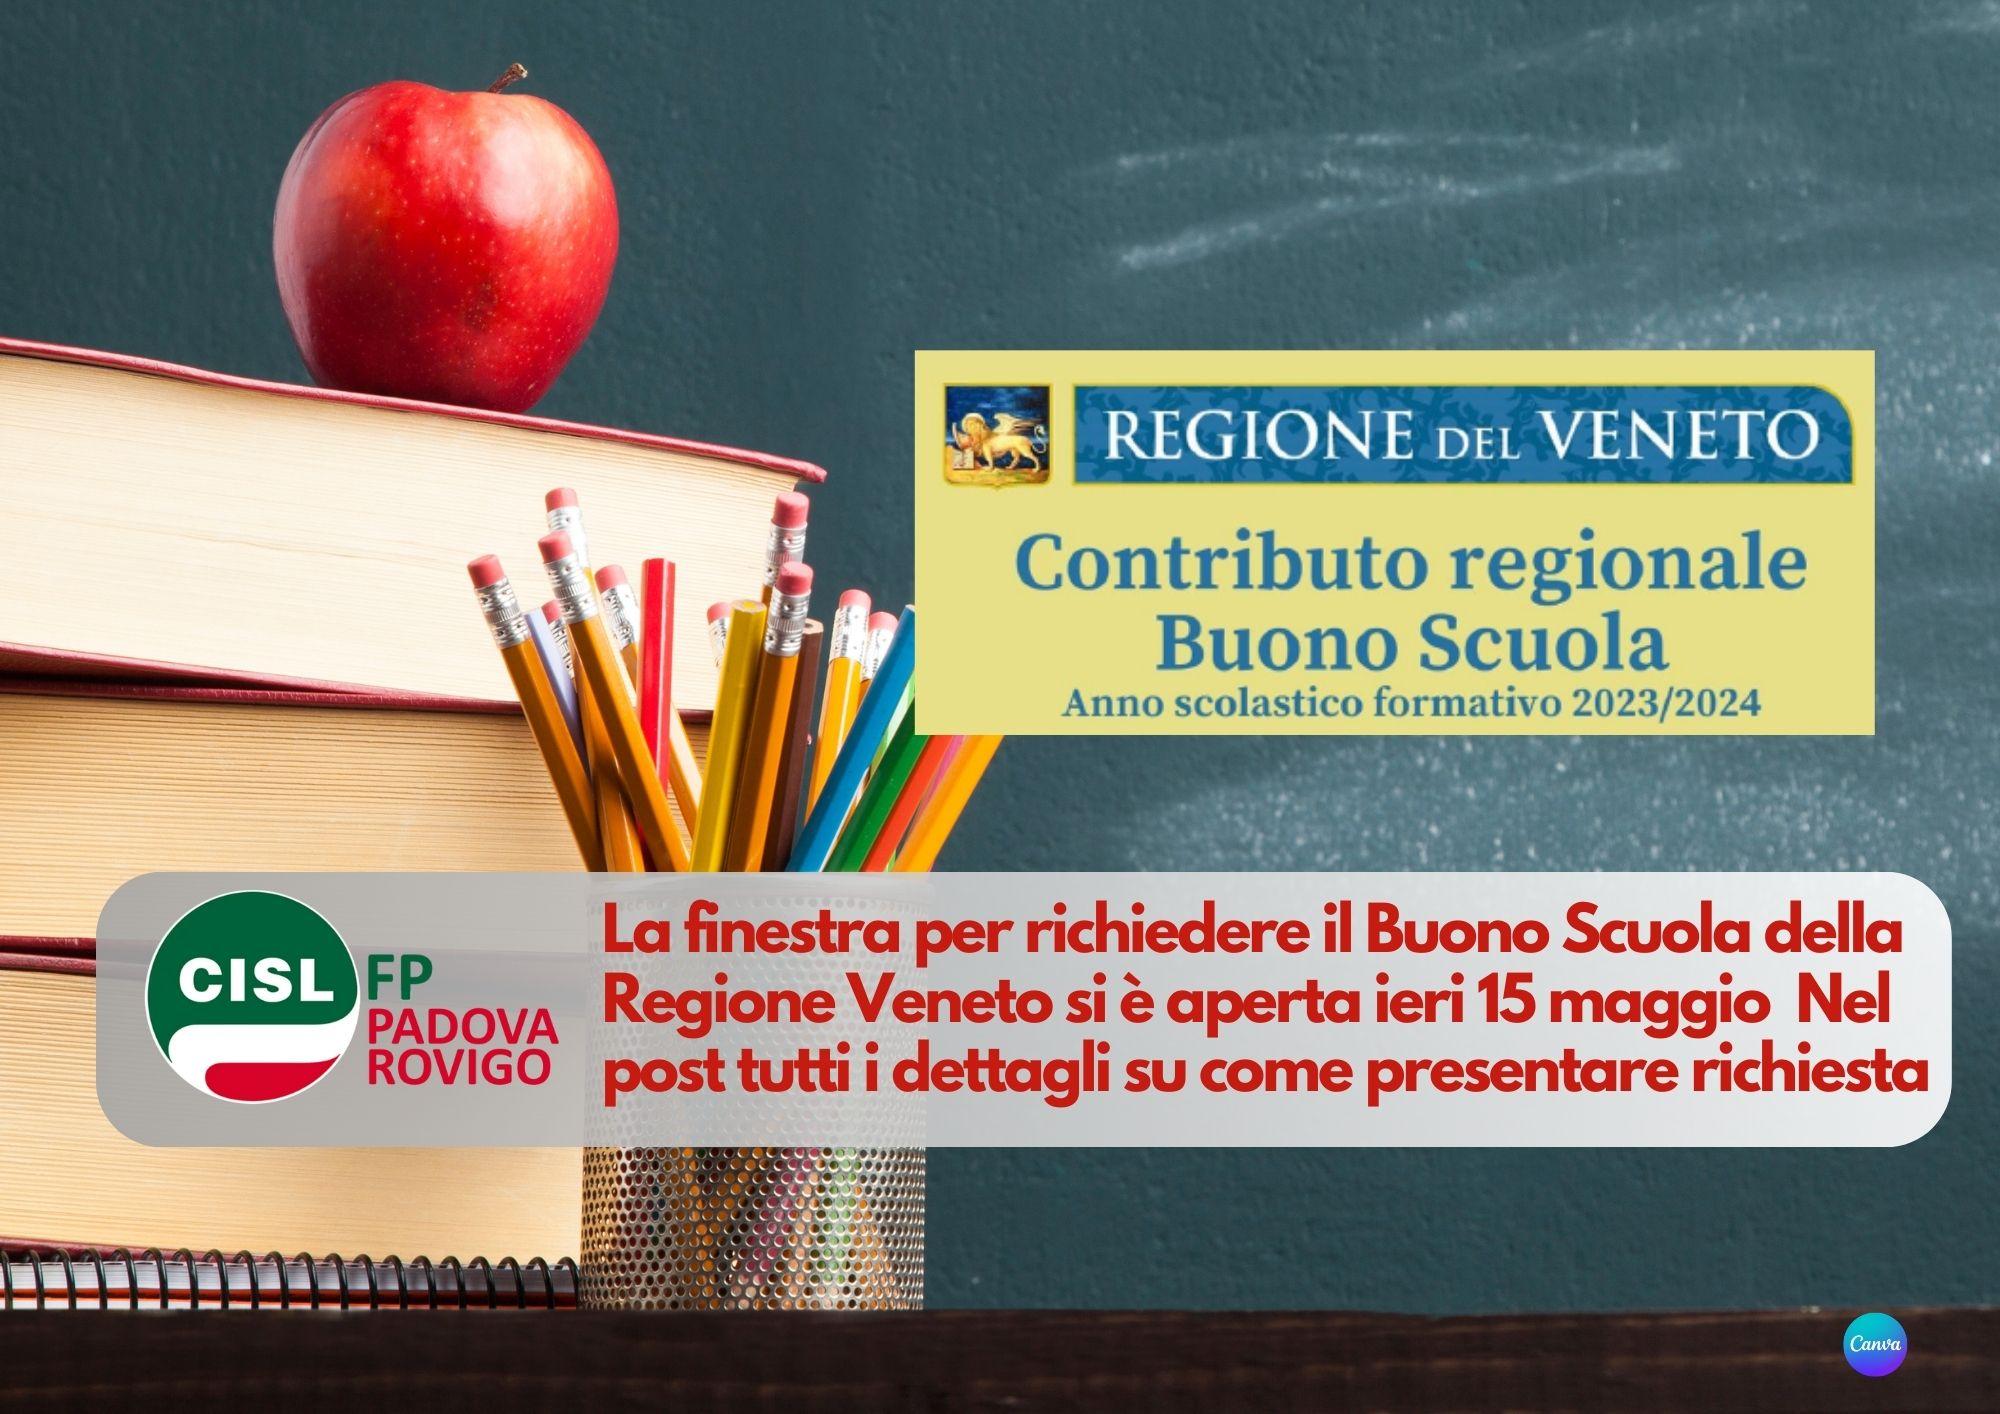 CISL FP Padova Rovigo. Contributo regionale Veneto "Buono Scuola". Come e quando richiederlo